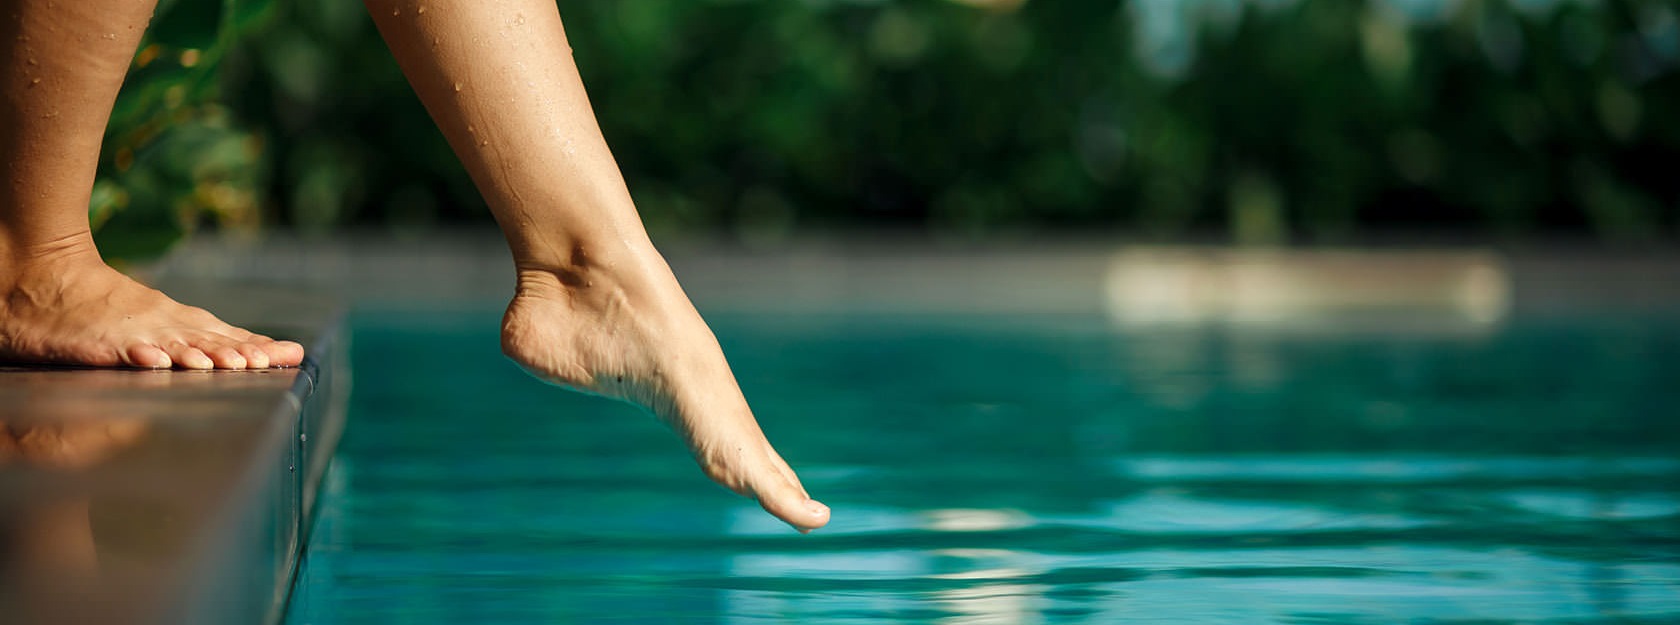 woman dipping toe in swimming pool